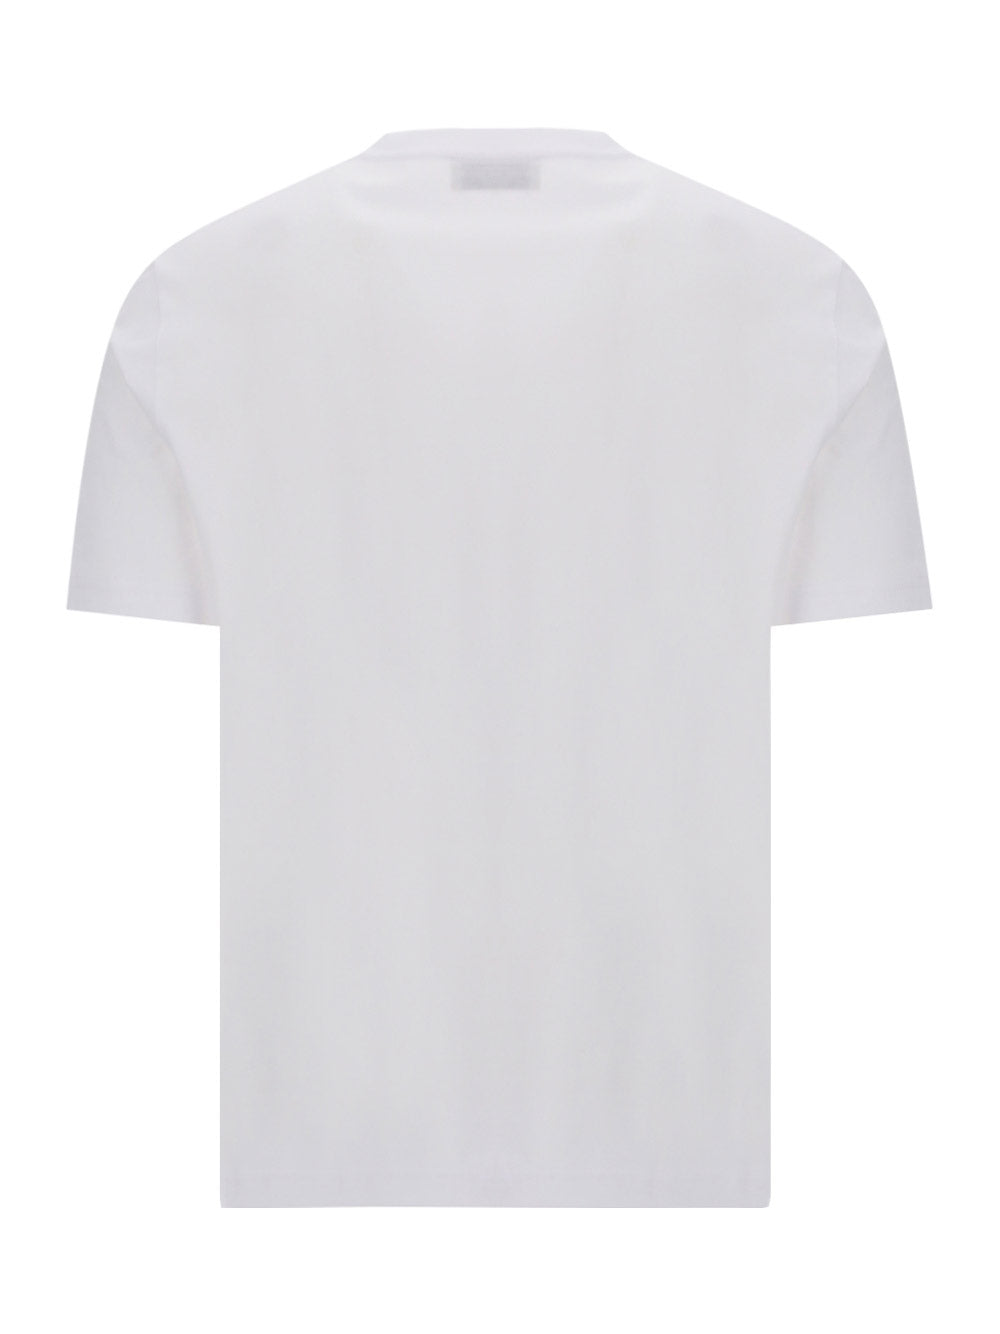 Embroidered Logo Regular T-Shirt - White